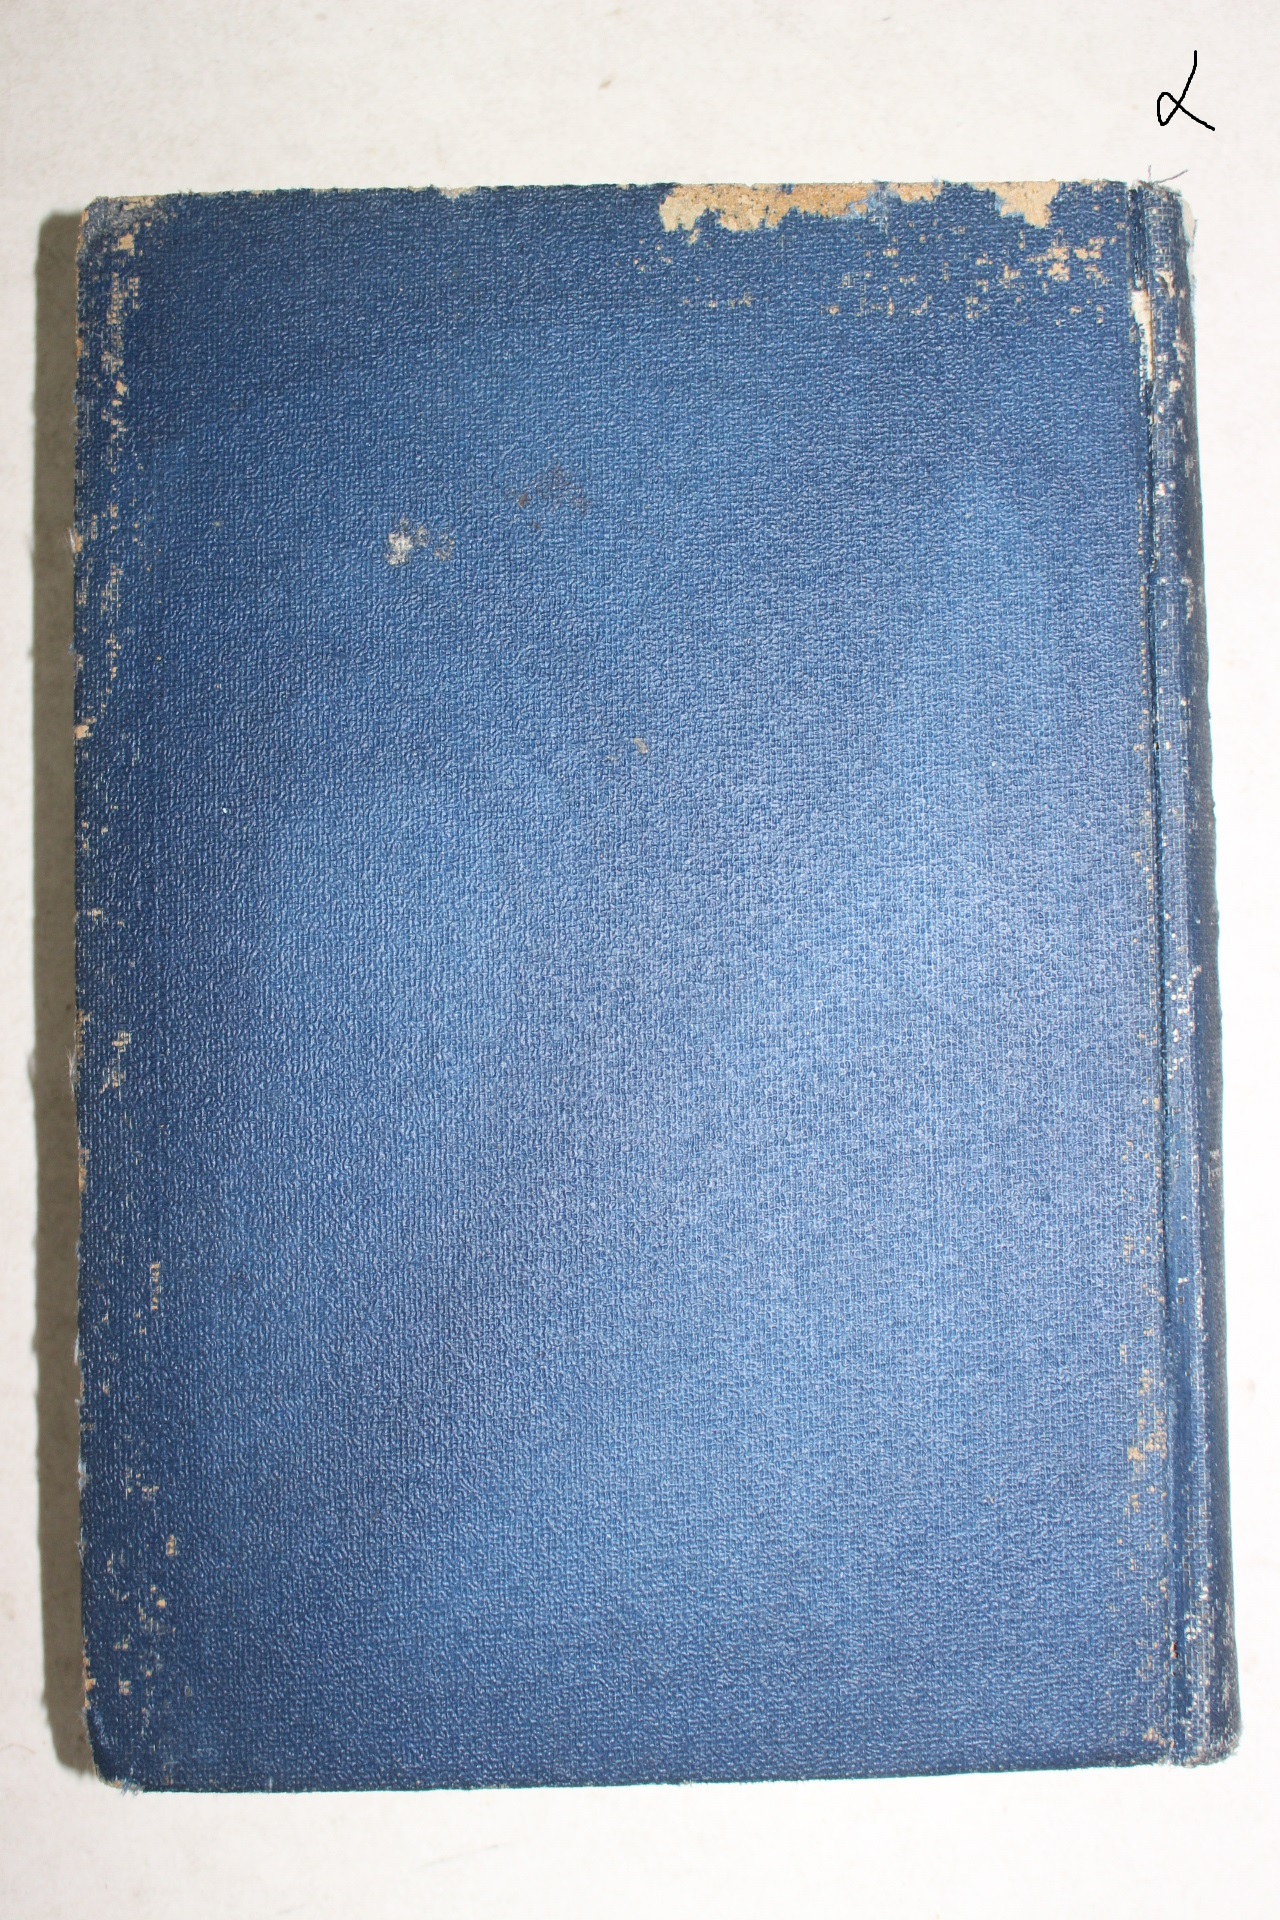 1942년 안석연(安錫淵)편 전등본말사지(傳燈本末寺誌) 1책완질